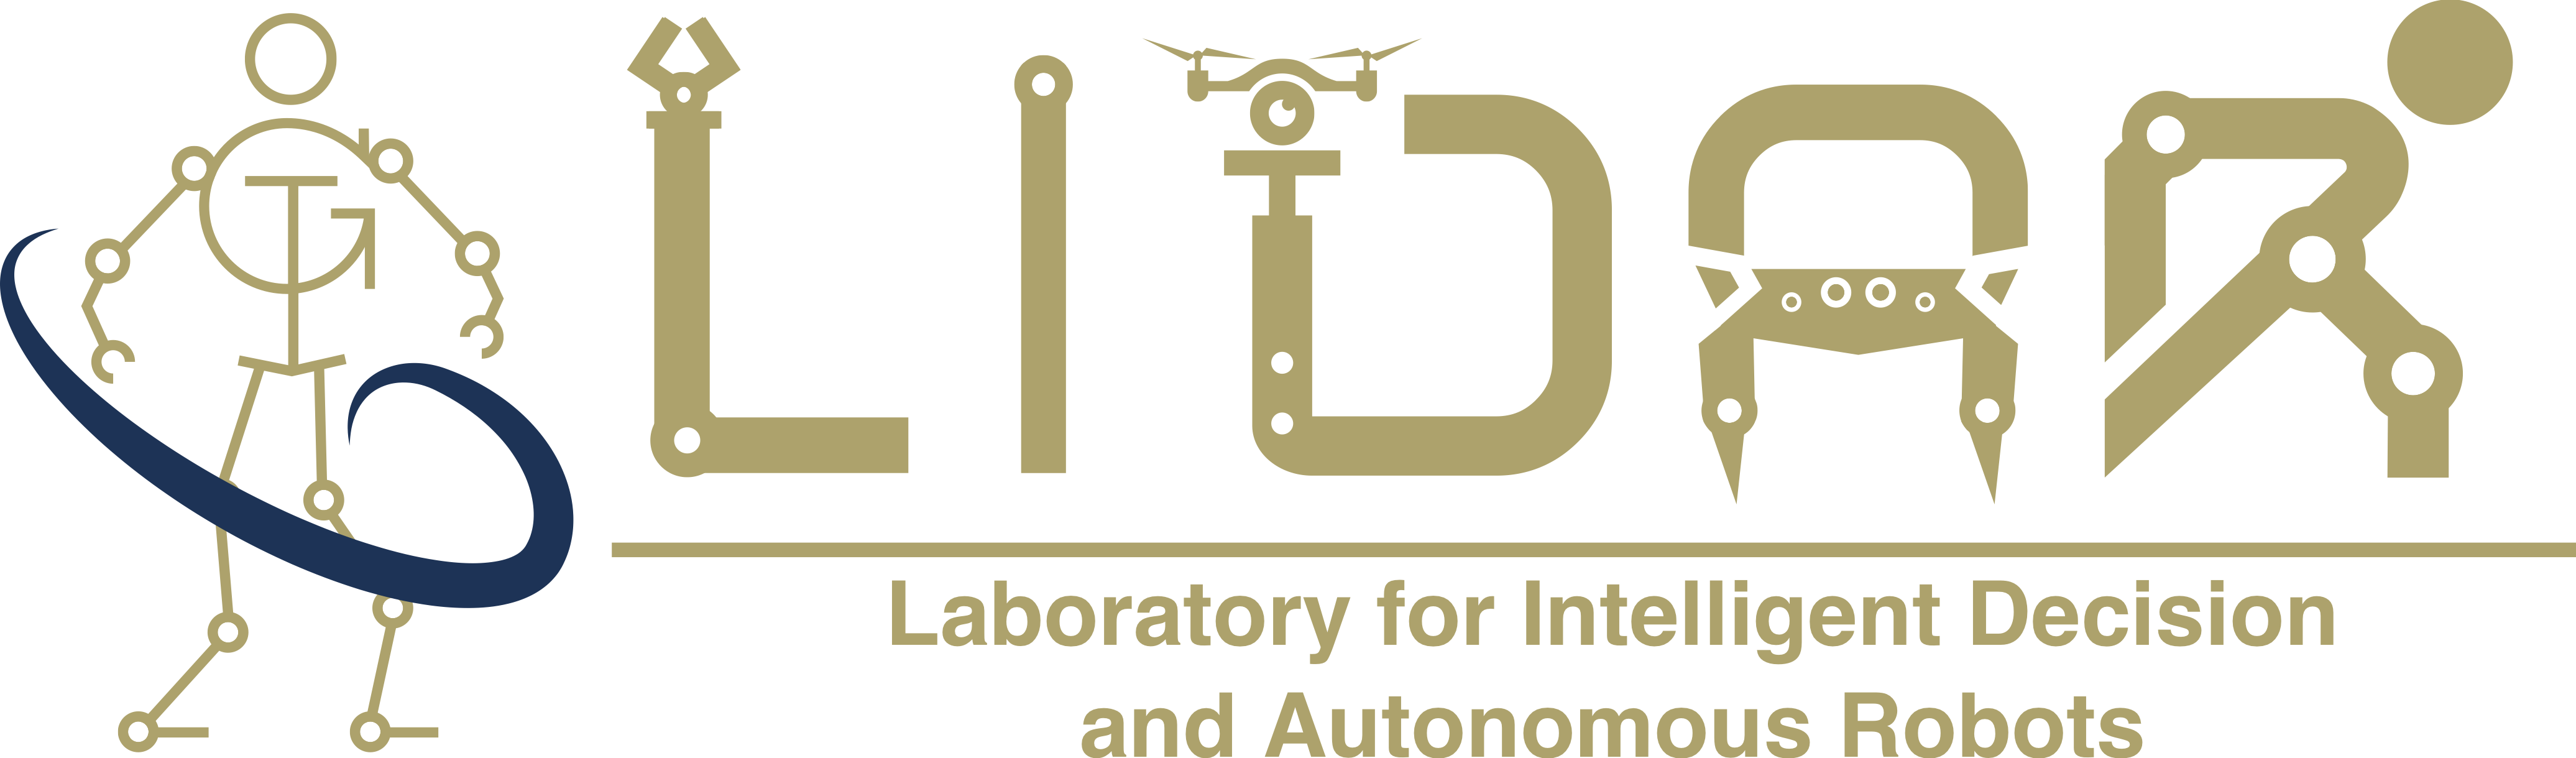 Laboratory for Intelligent Decision and Autonomous Robots